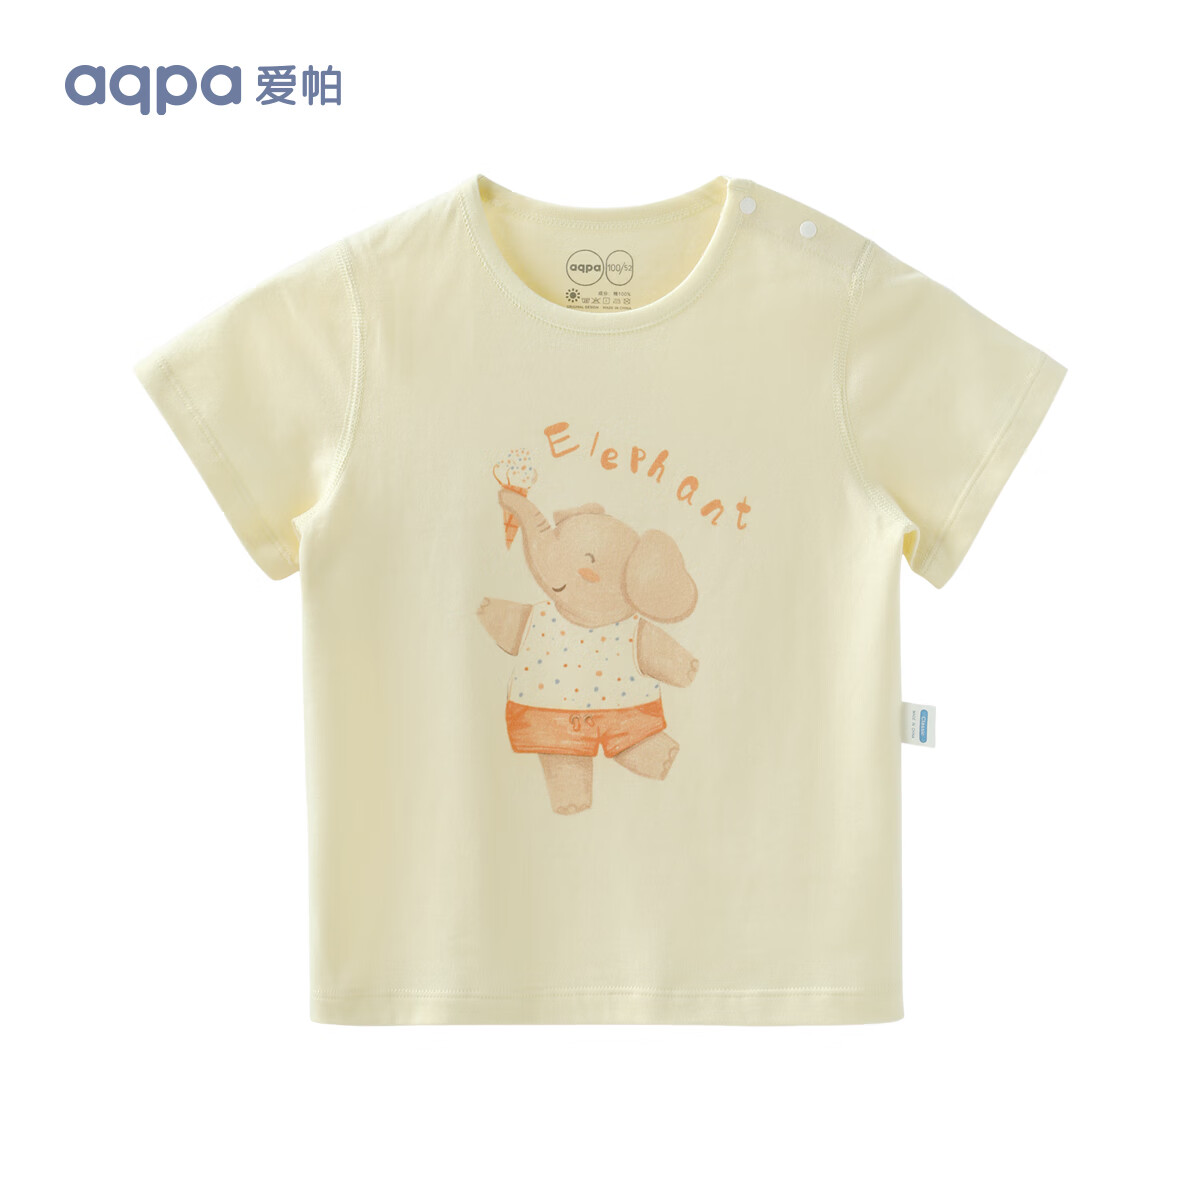 aqpa 儿童短袖T恤 22.5元